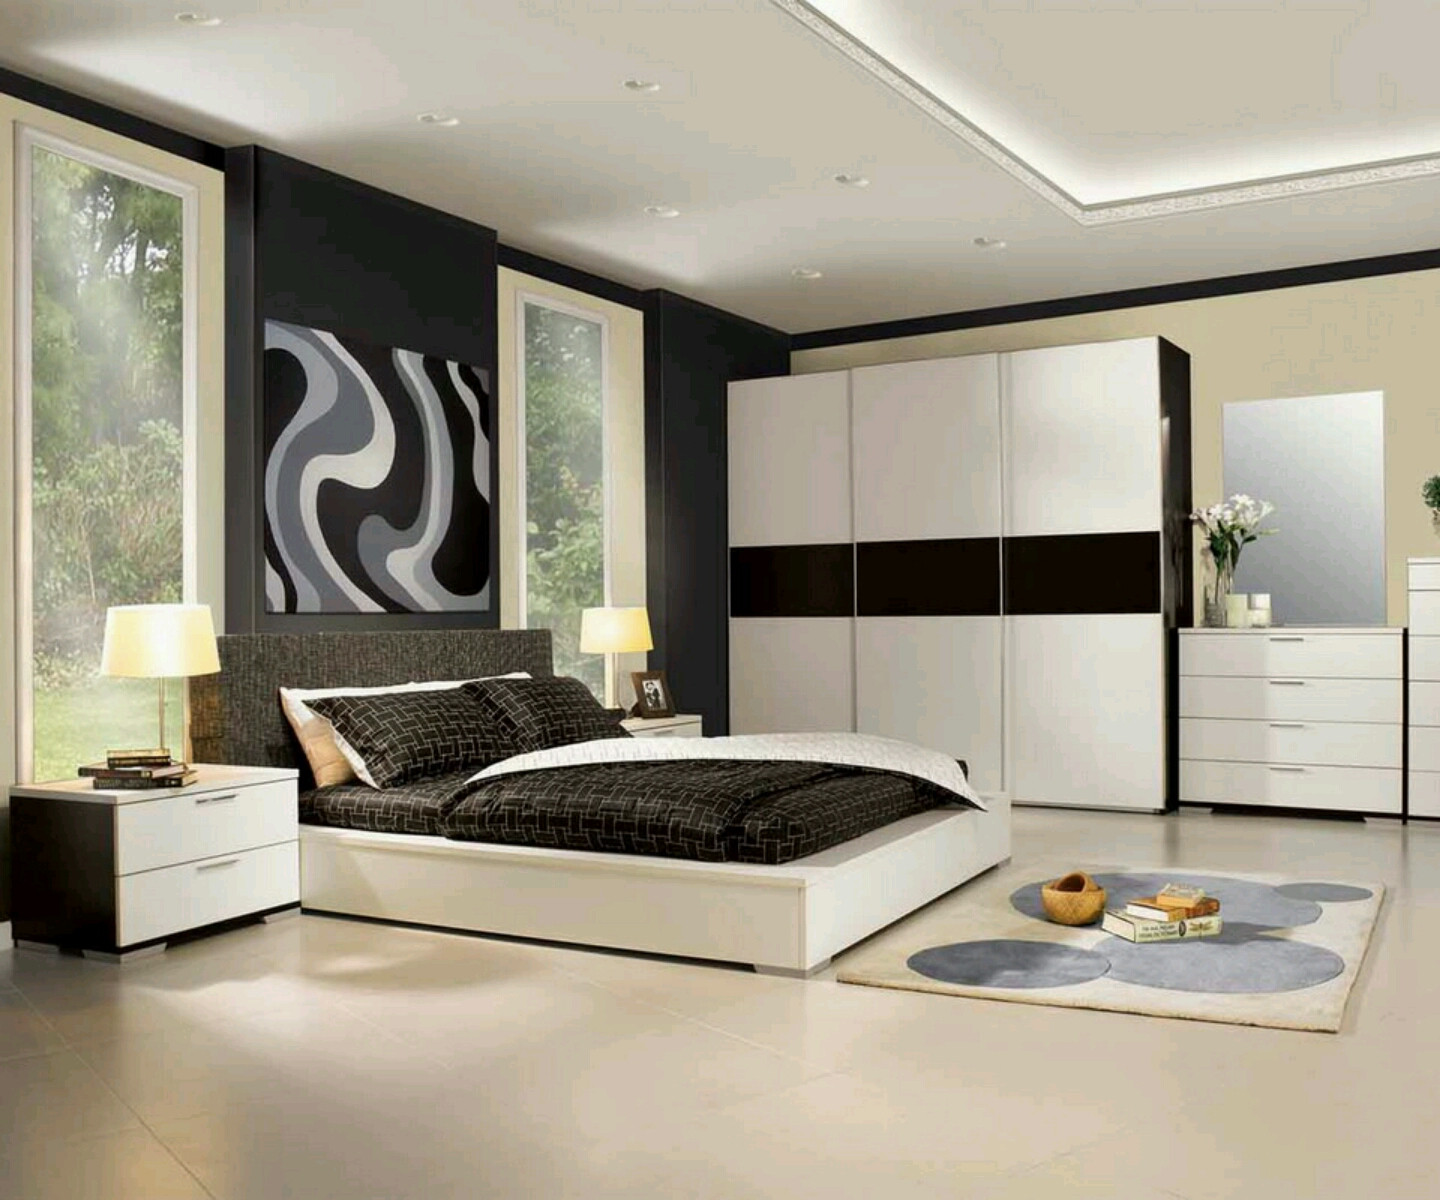 Modern Contemporary Bedroom Furniture
 Best Design Home December 2012